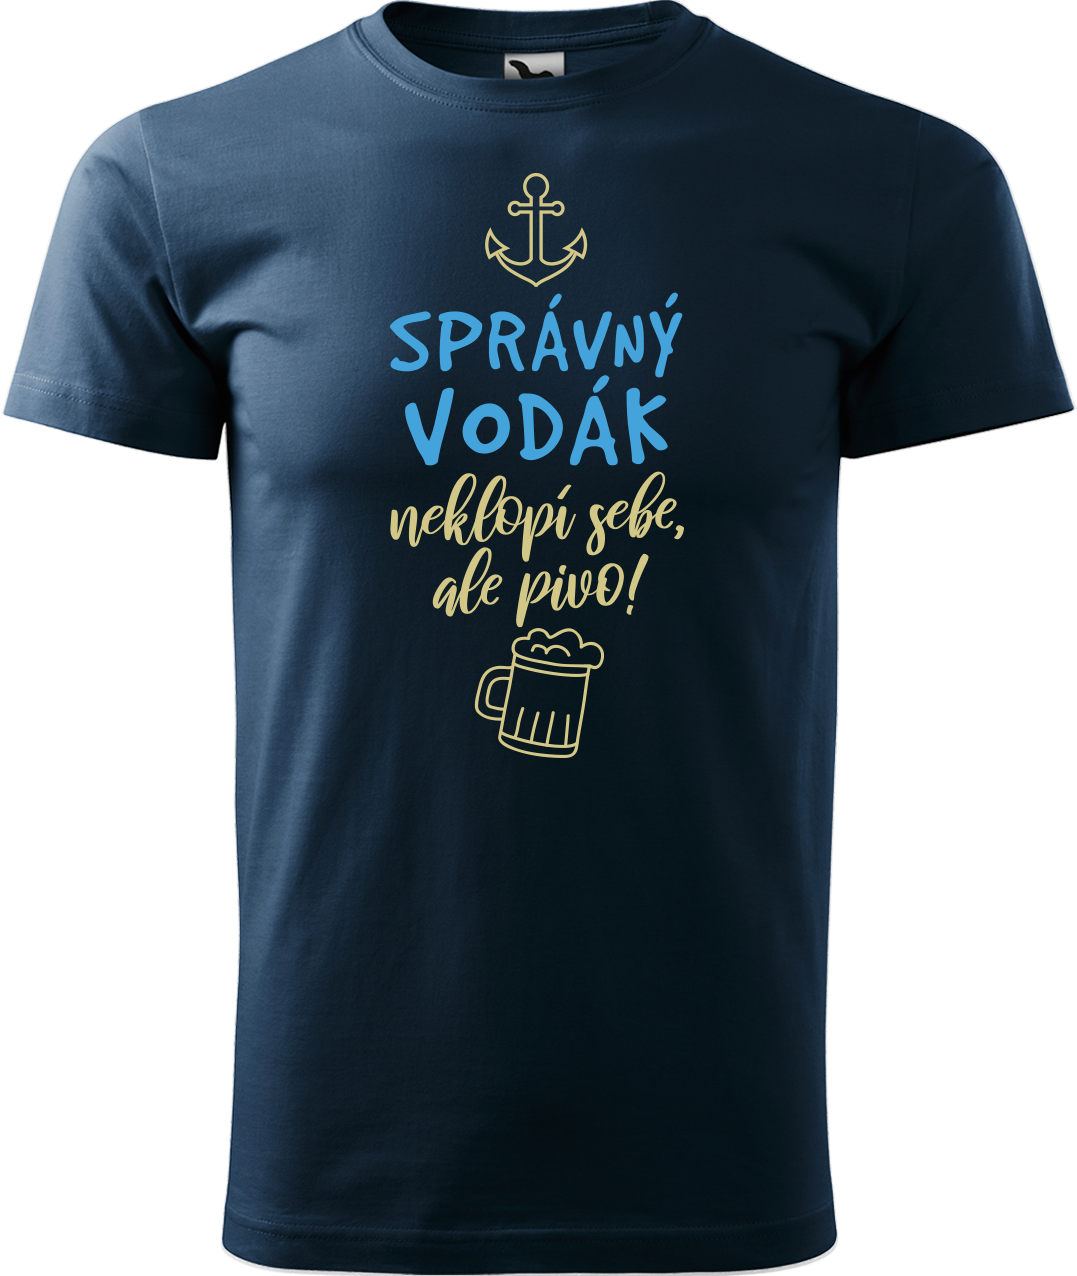 Pánské vodácké tričko - Správný vodák Velikost: XL, Barva: Námořní modrá (02)